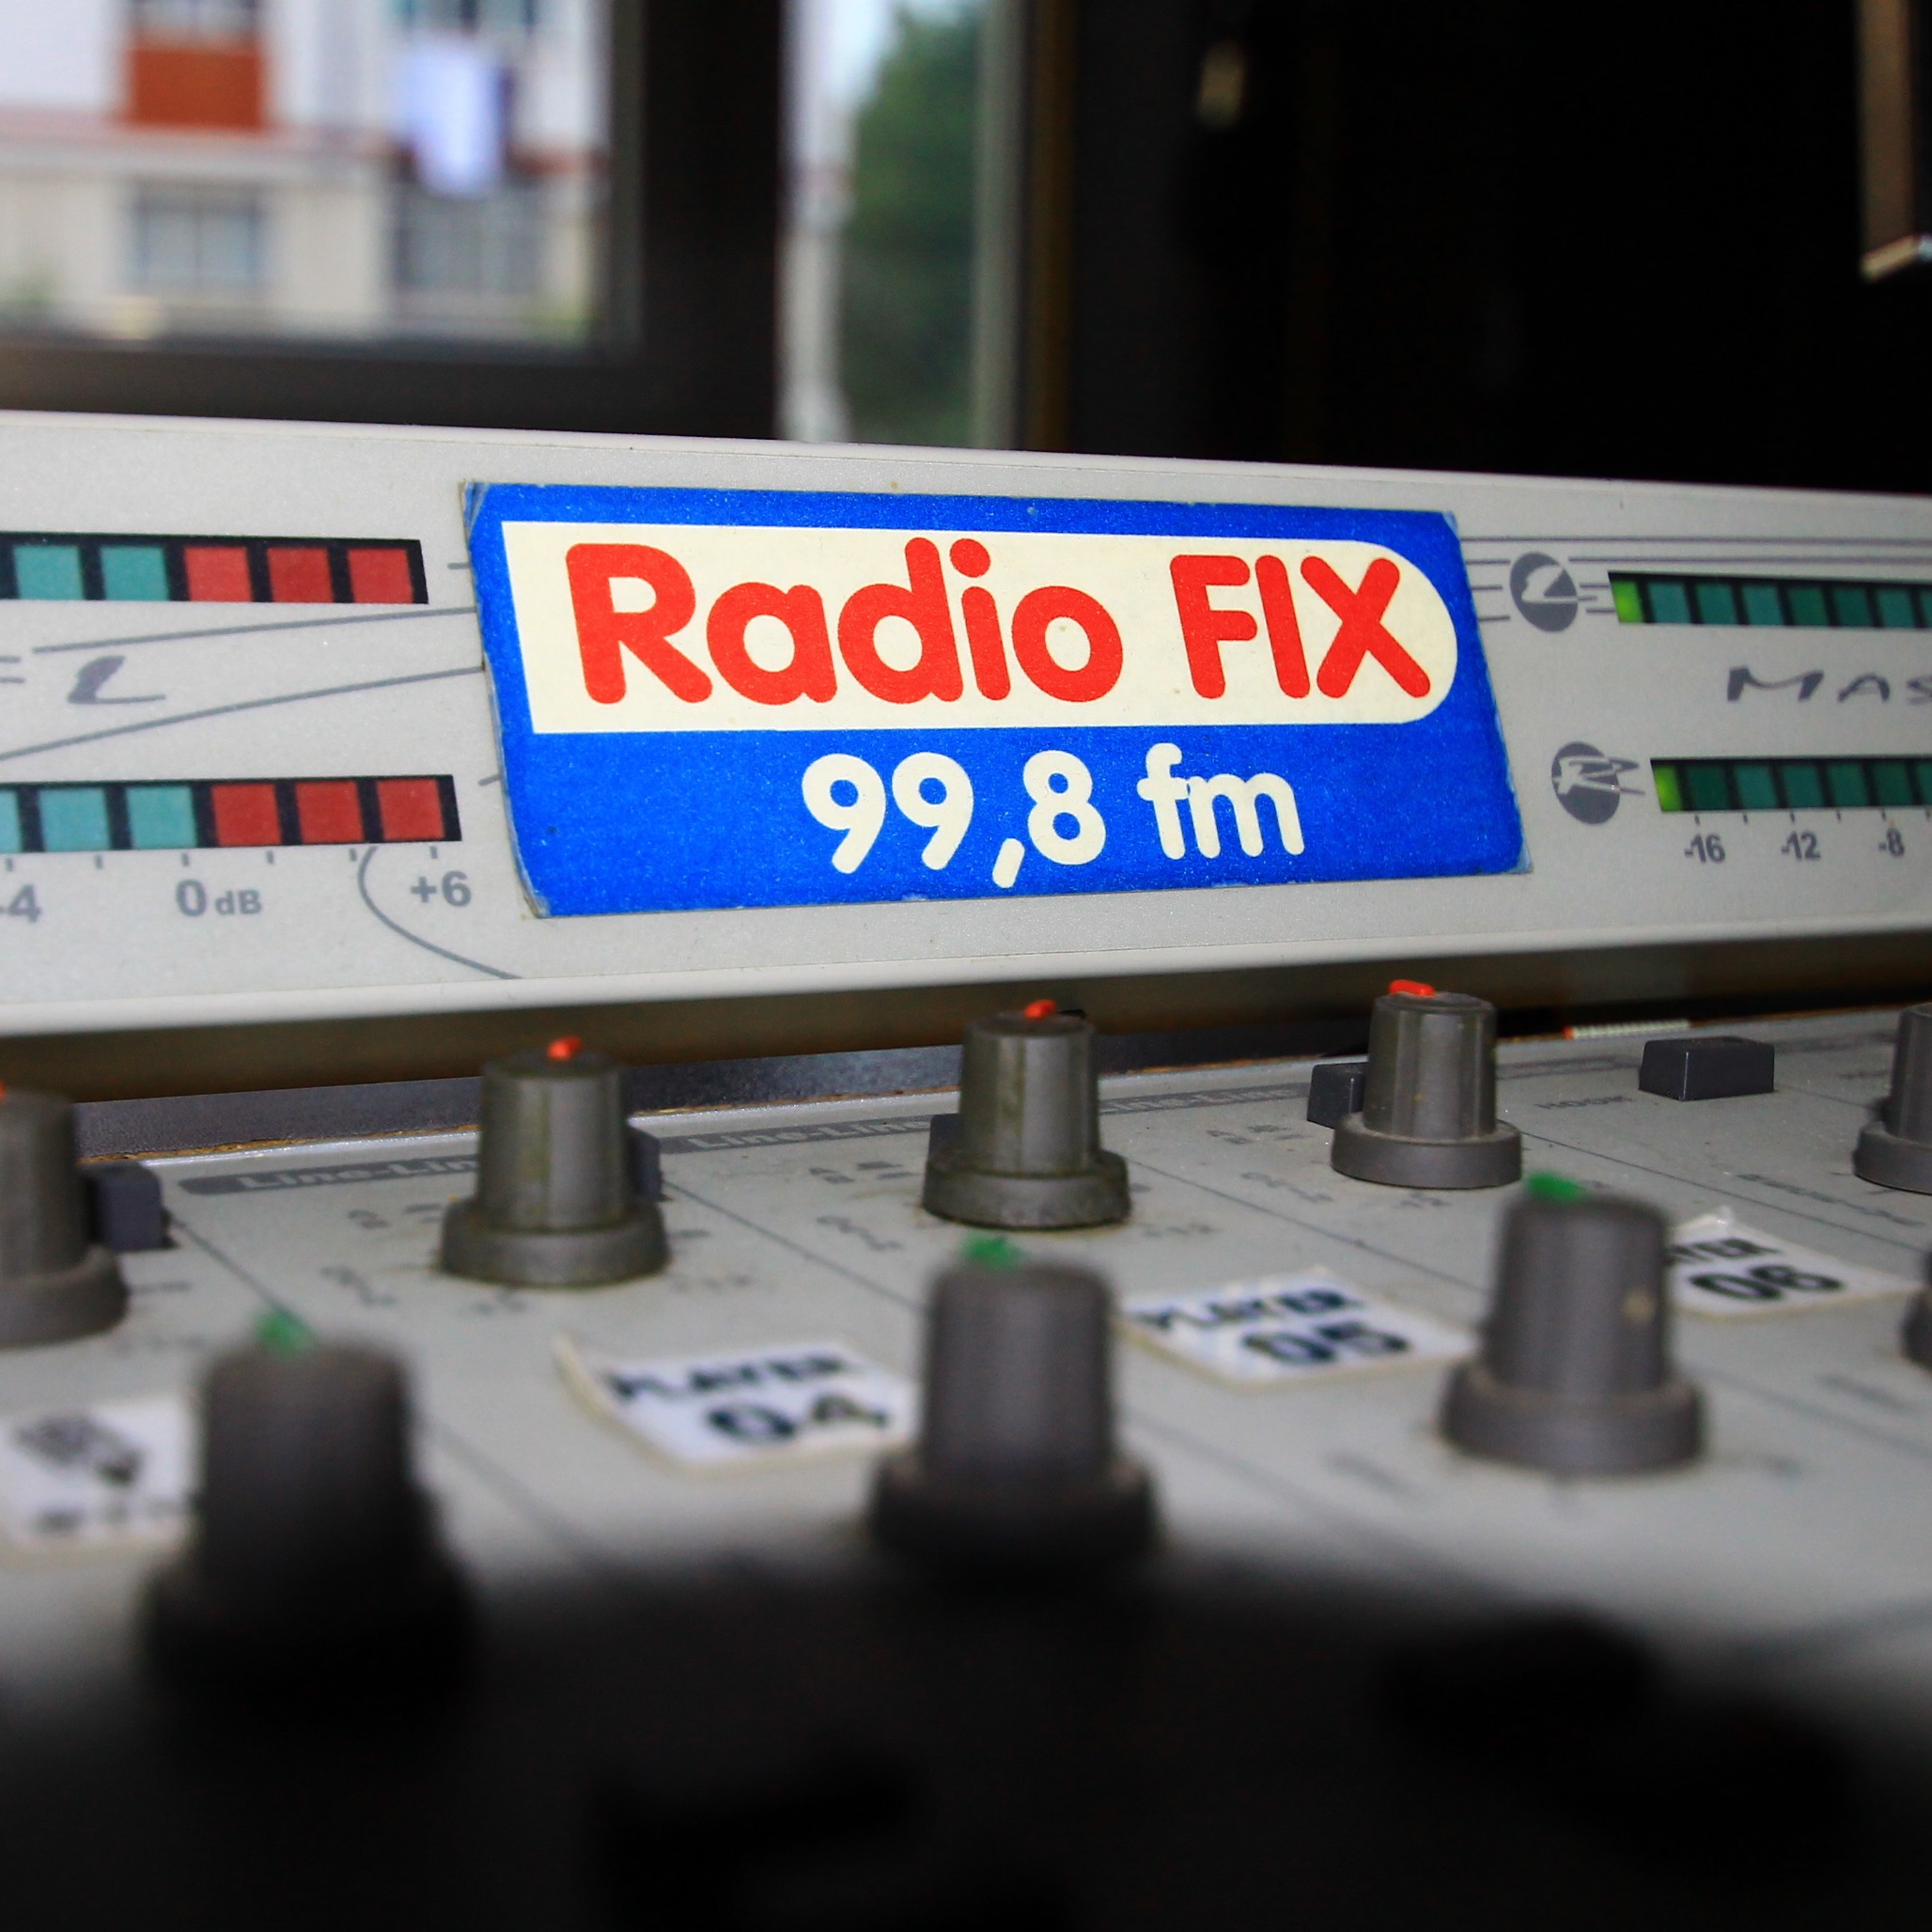 Radio Fix